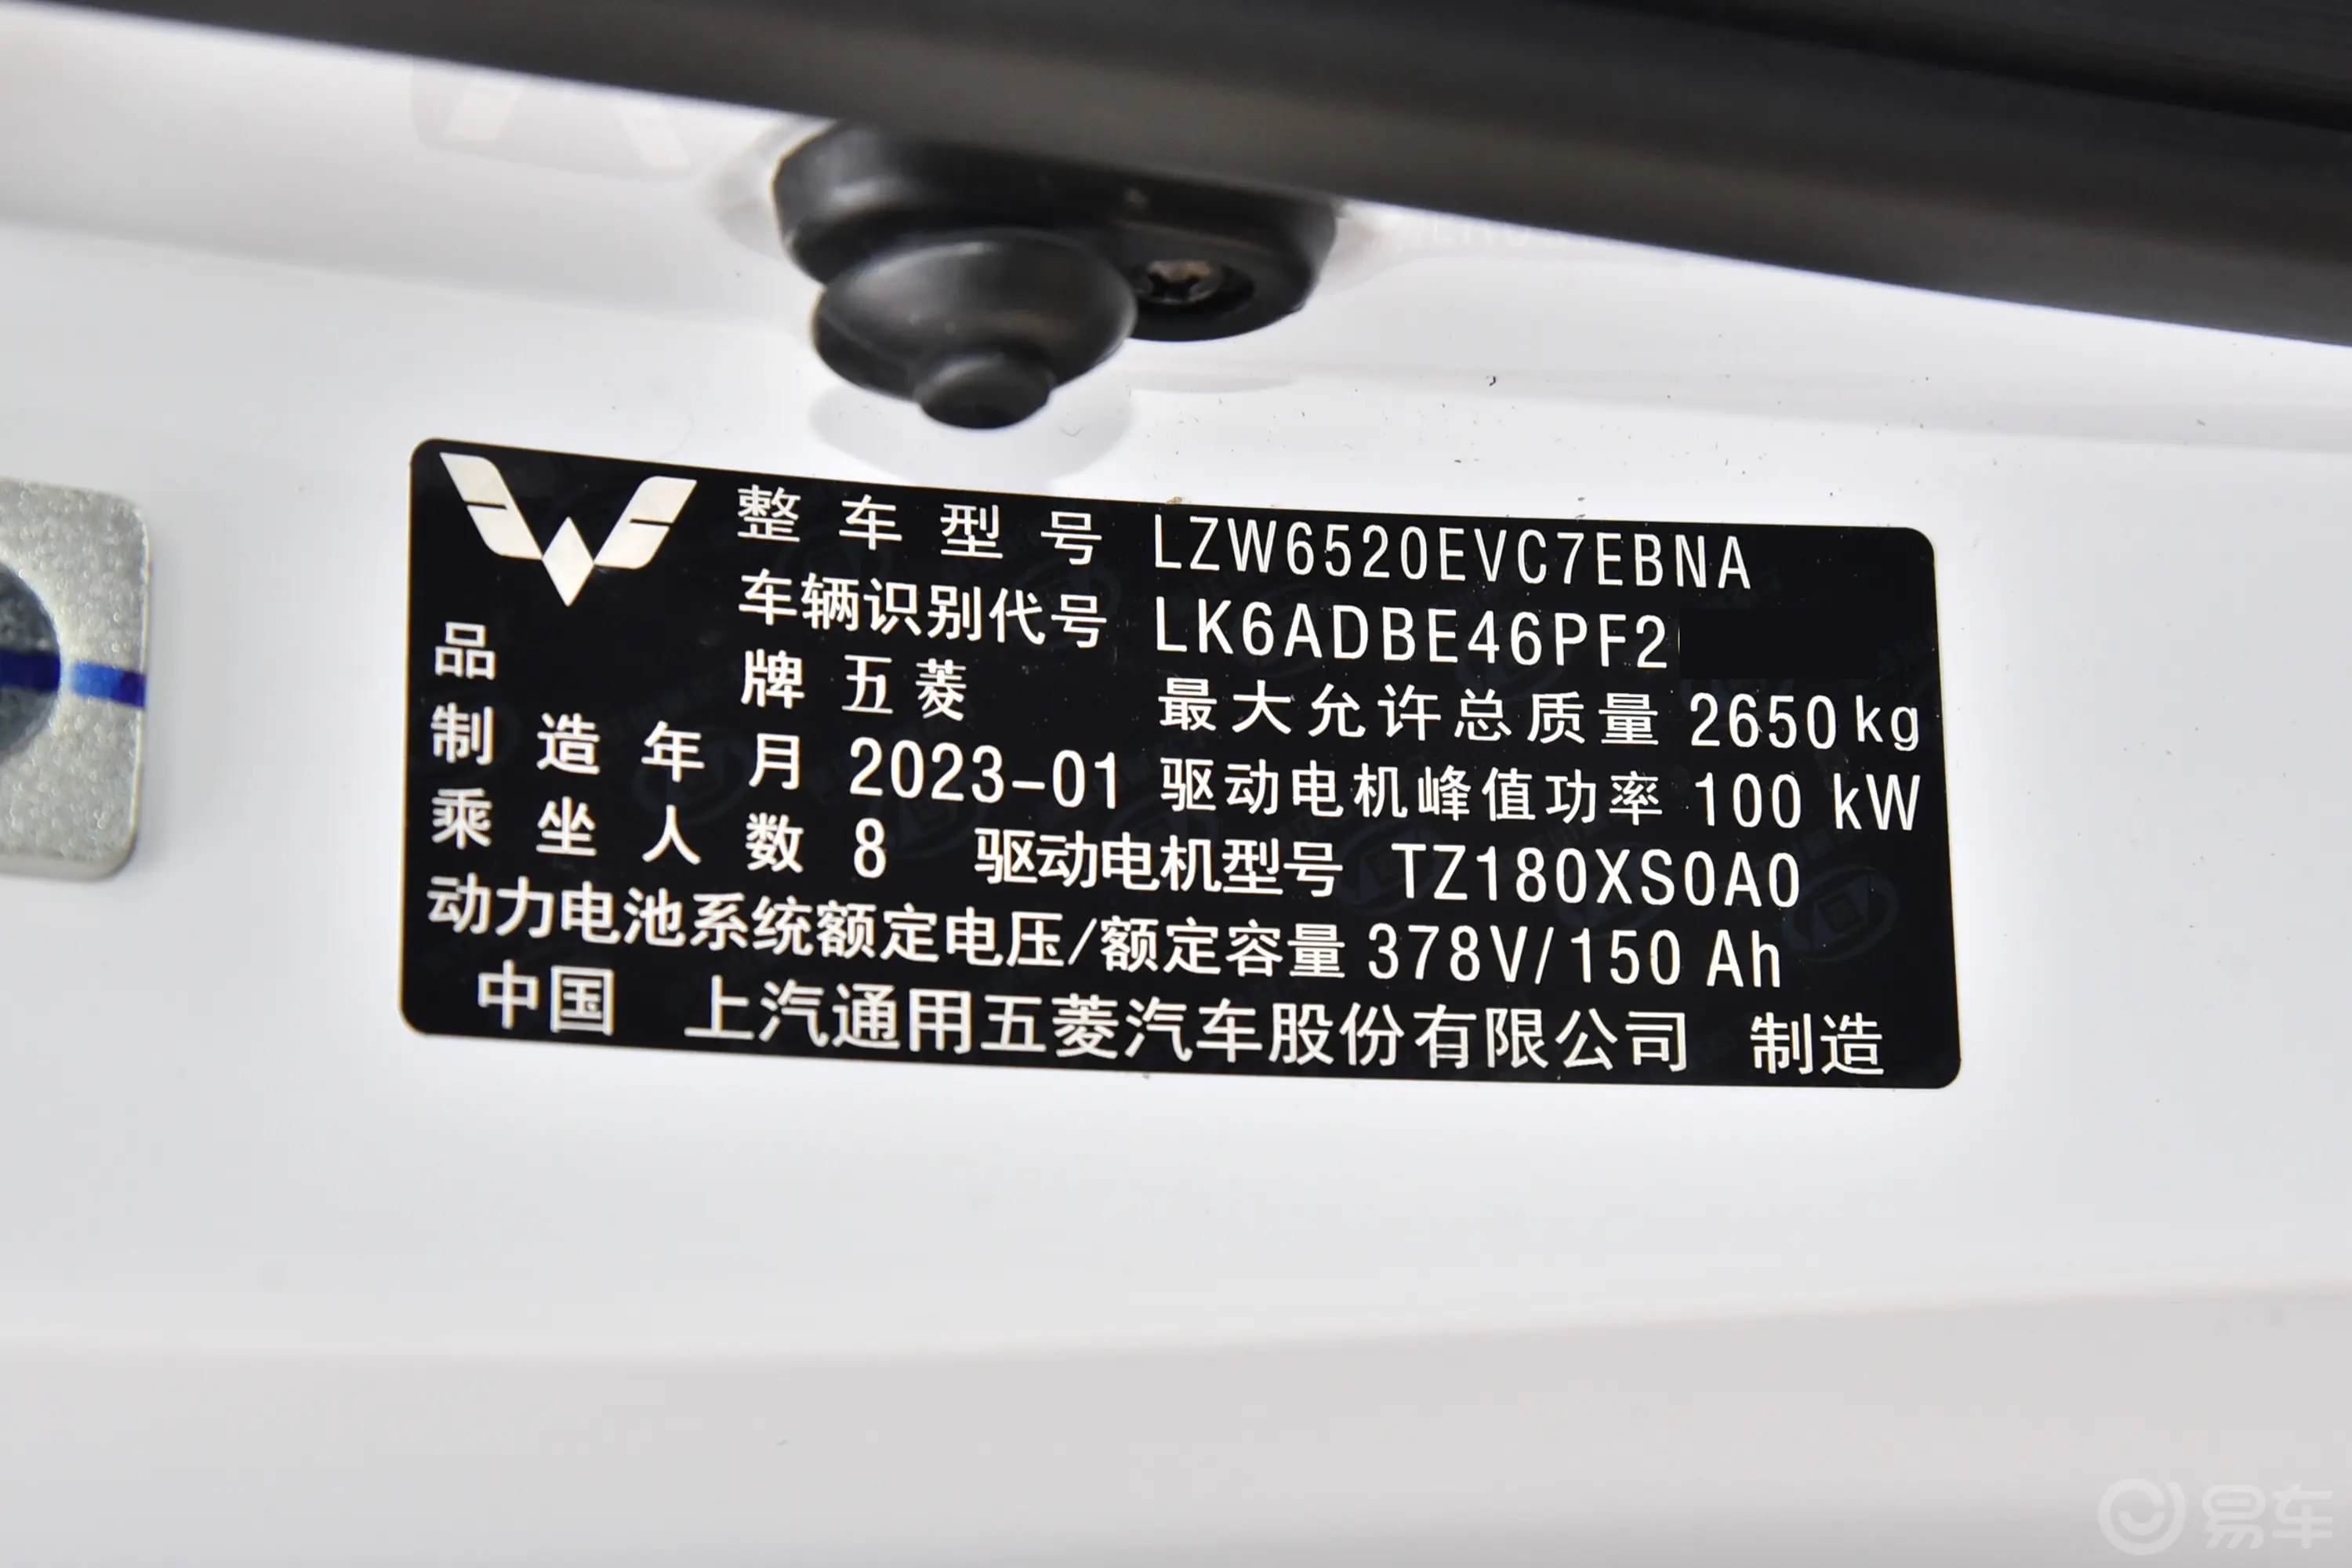 五菱征程EV360km 营运客车(普通级) 8座车辆信息铭牌